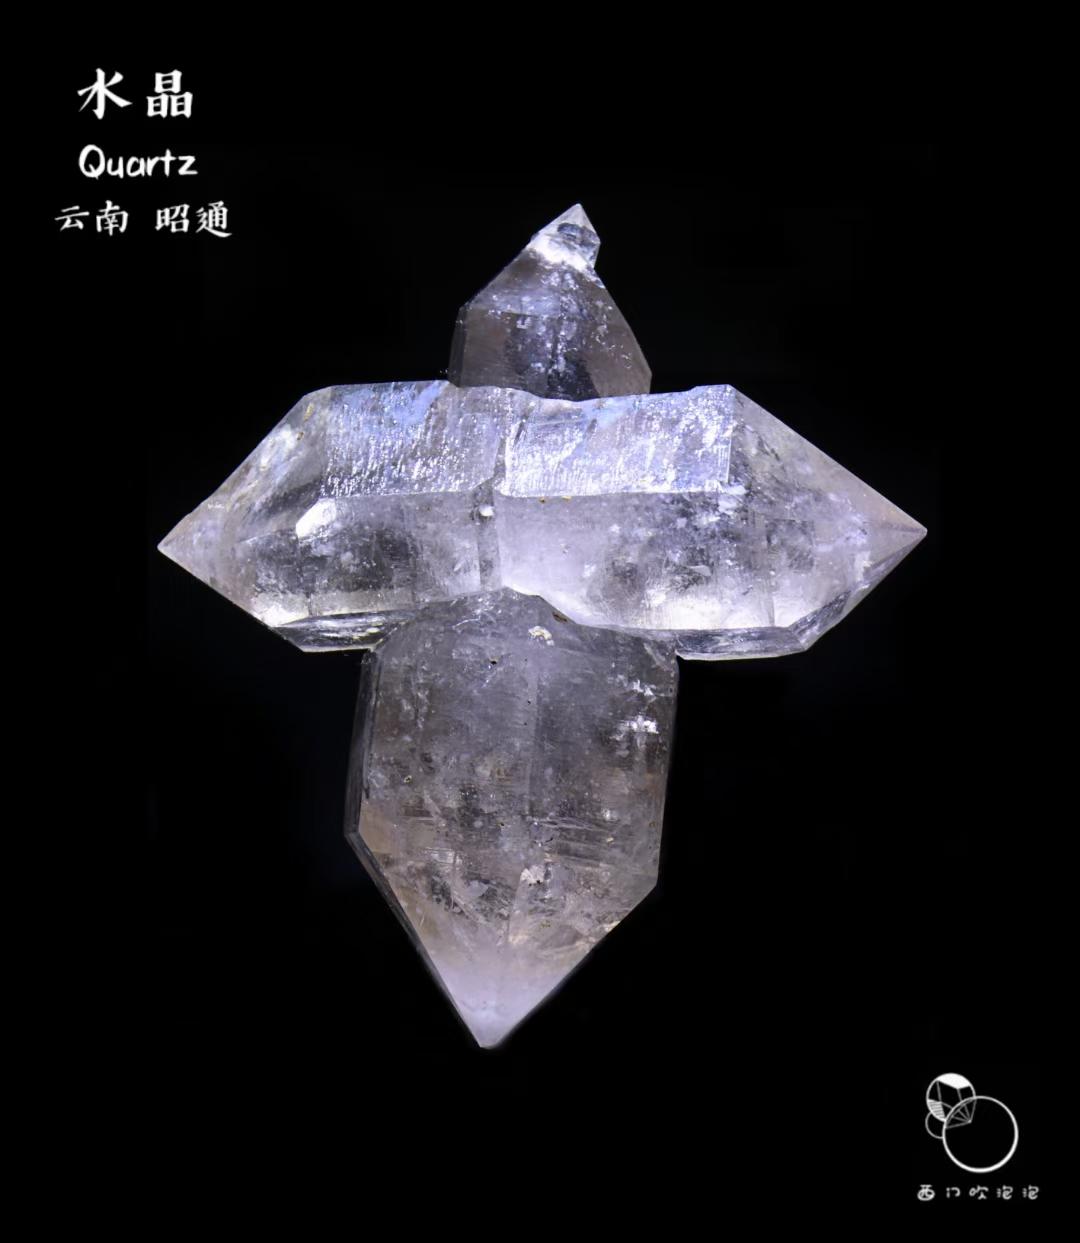 和多数浮生水晶类似,云贵水晶中以单晶为主,偶尔出产无规则穿插双晶或